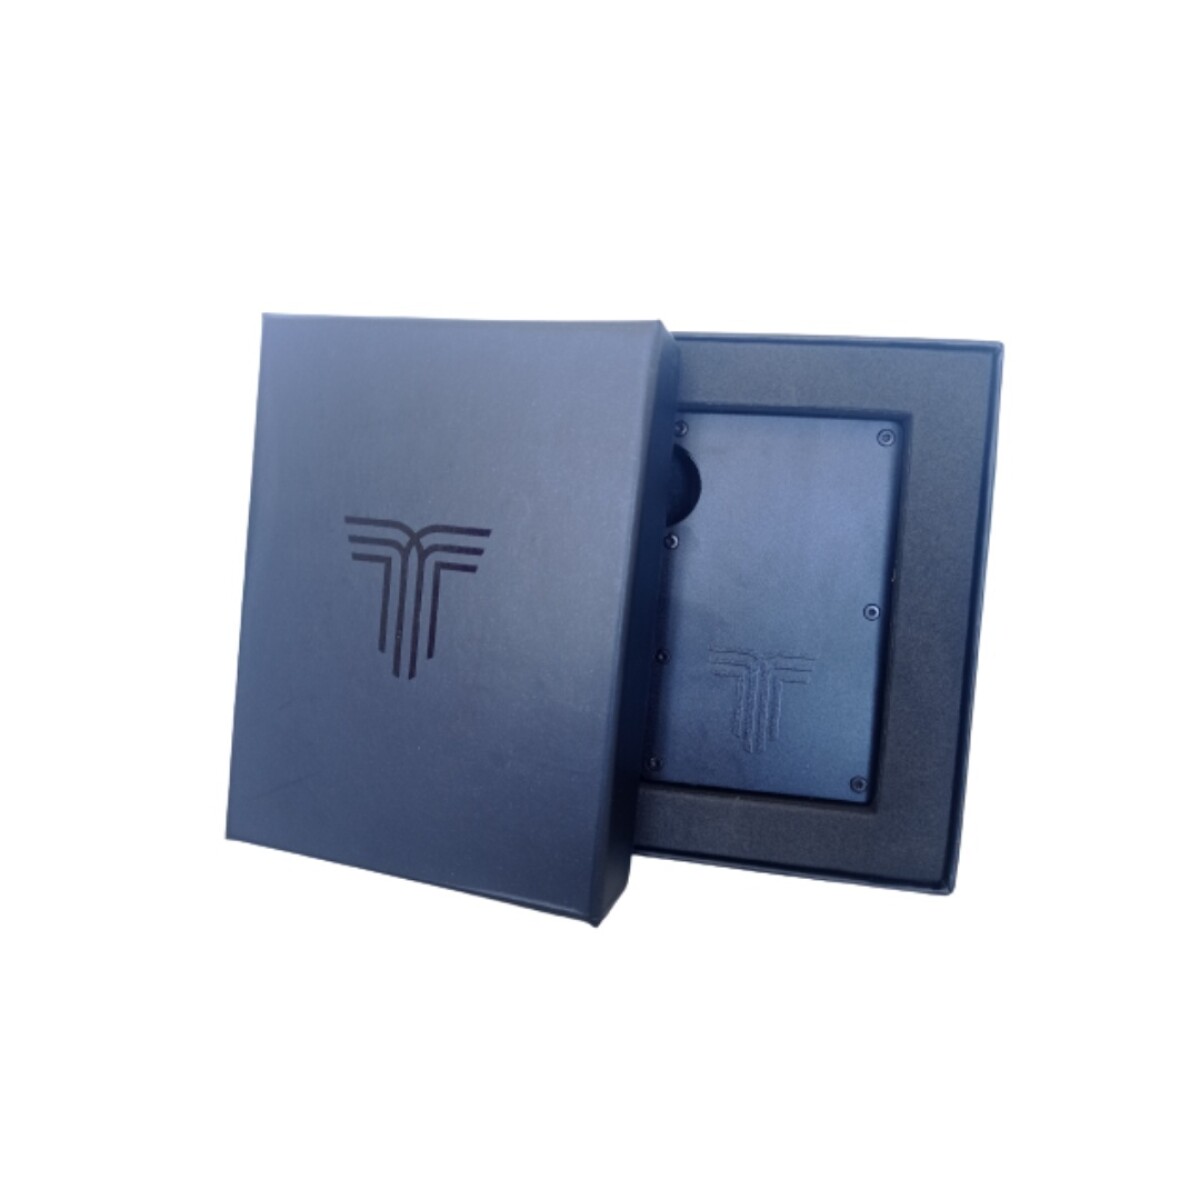 Billetera Tiffosi Wallet Aluminio - S/C 